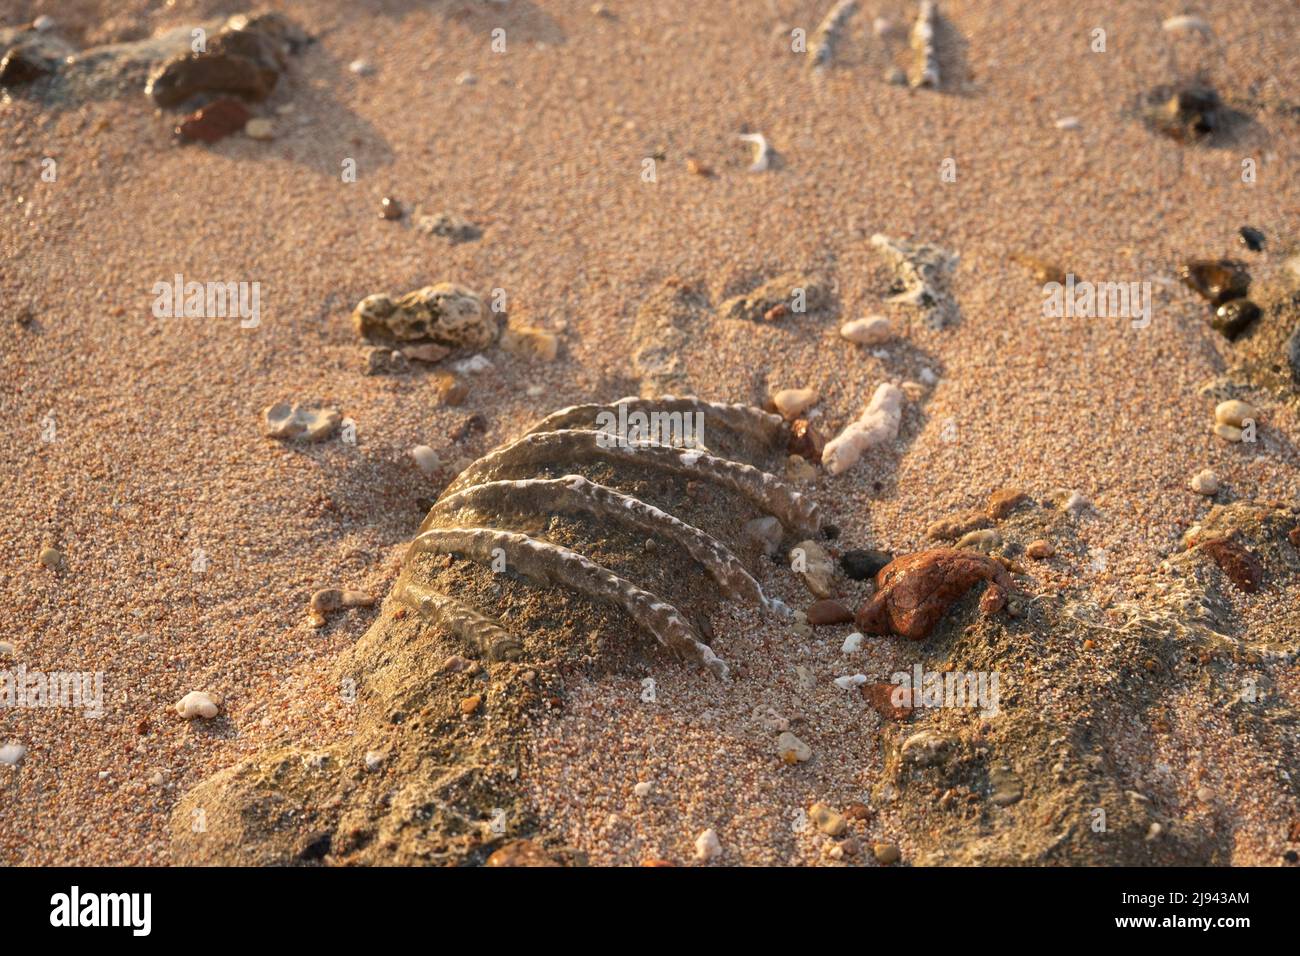 Gros plan de la coquille fossilisée de tridacna sur une plage de sable de corail dans la zone de surf. Mer Rouge, Égypte Banque D'Images